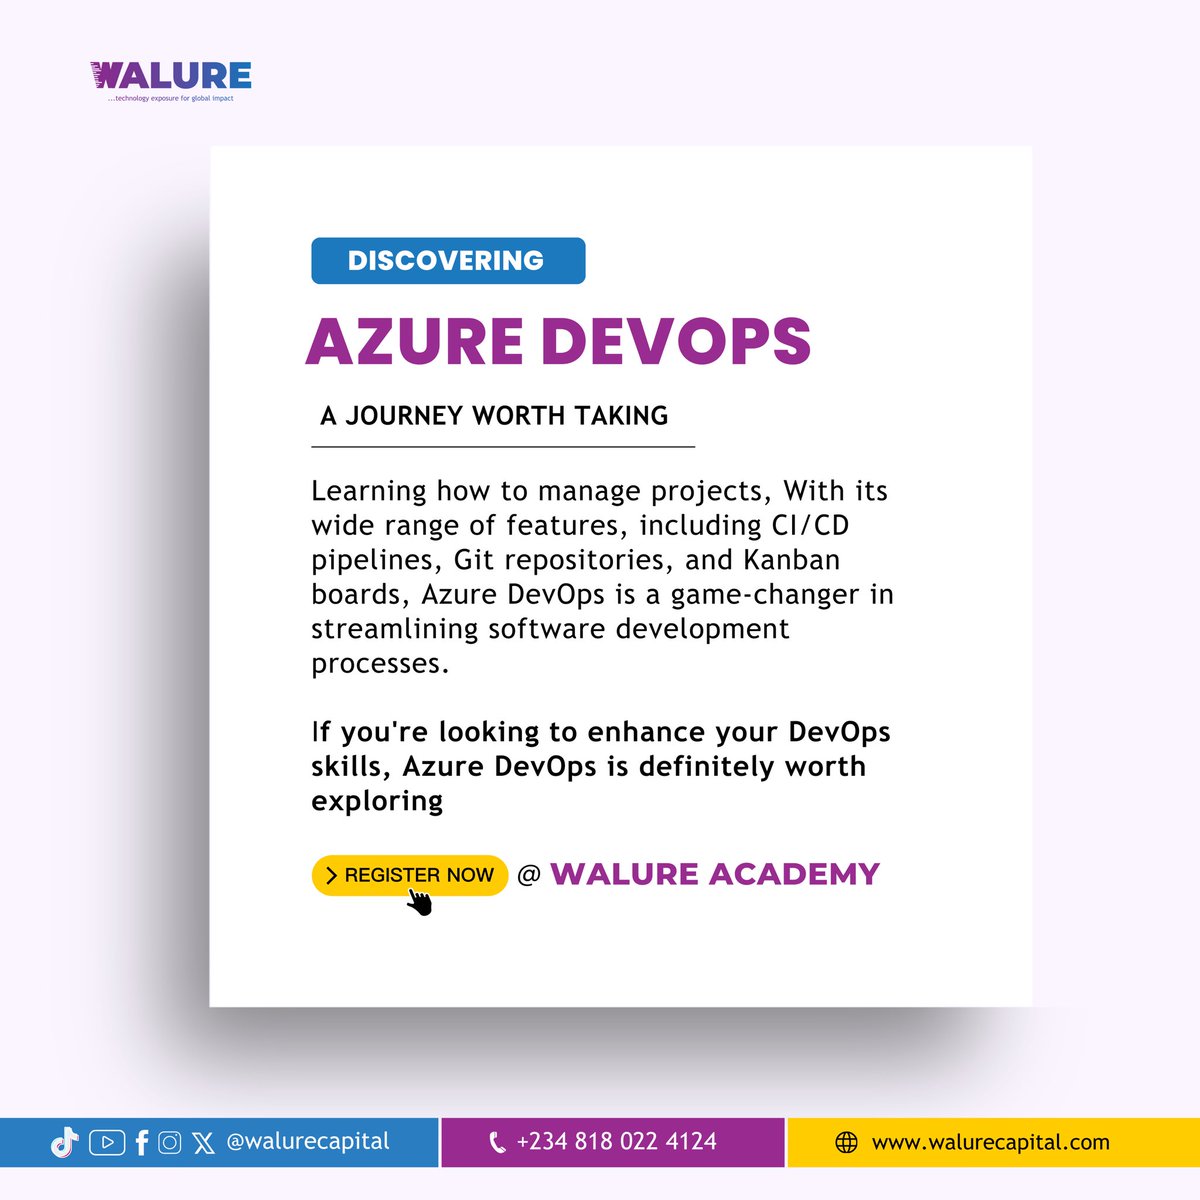 Dive into the world of Azure DevOps
         
#Tech 
#azuredevops
#walureacademy
#DevOps